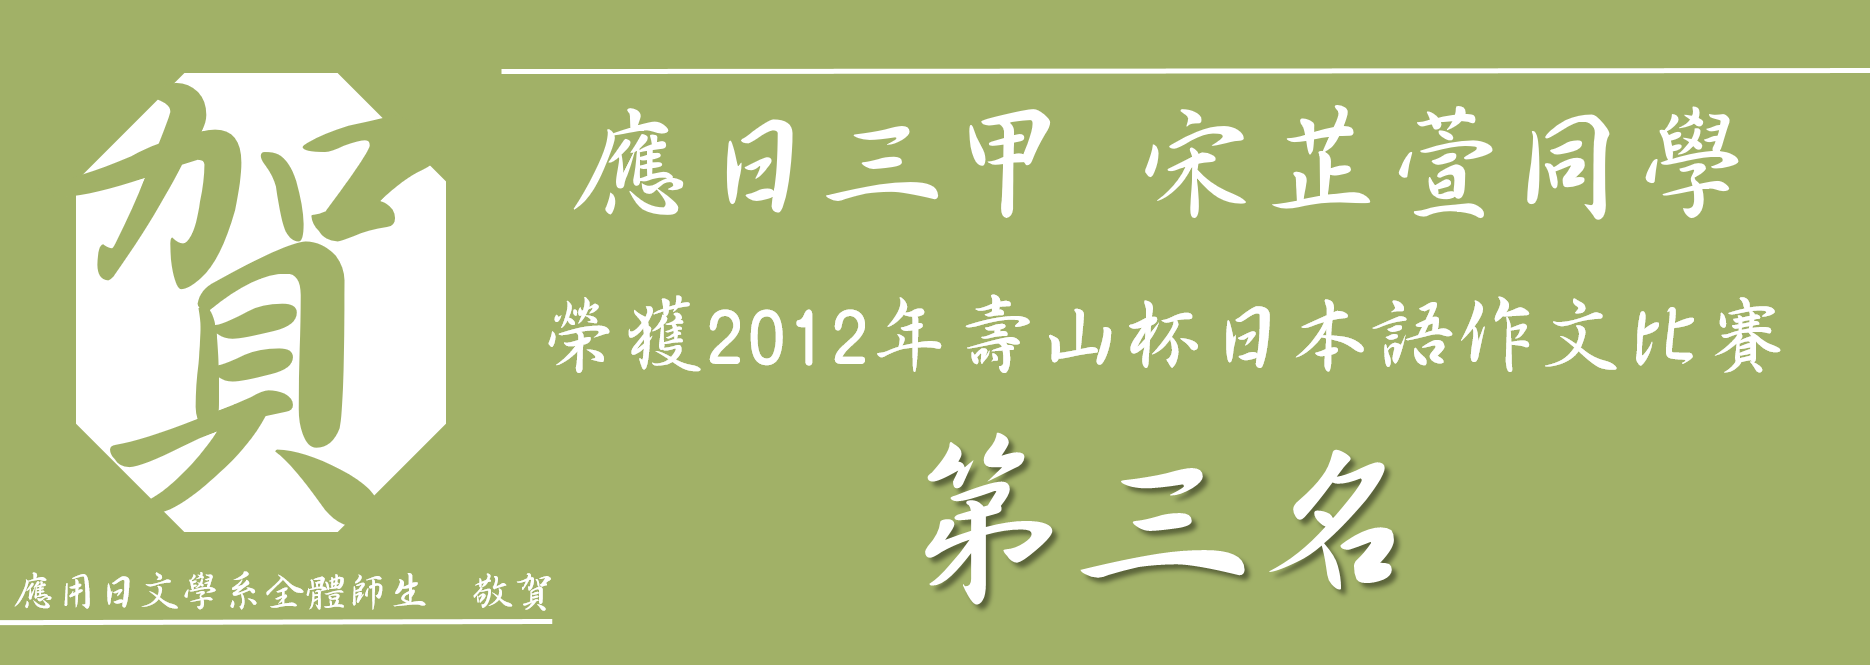 2012日語作文比賽